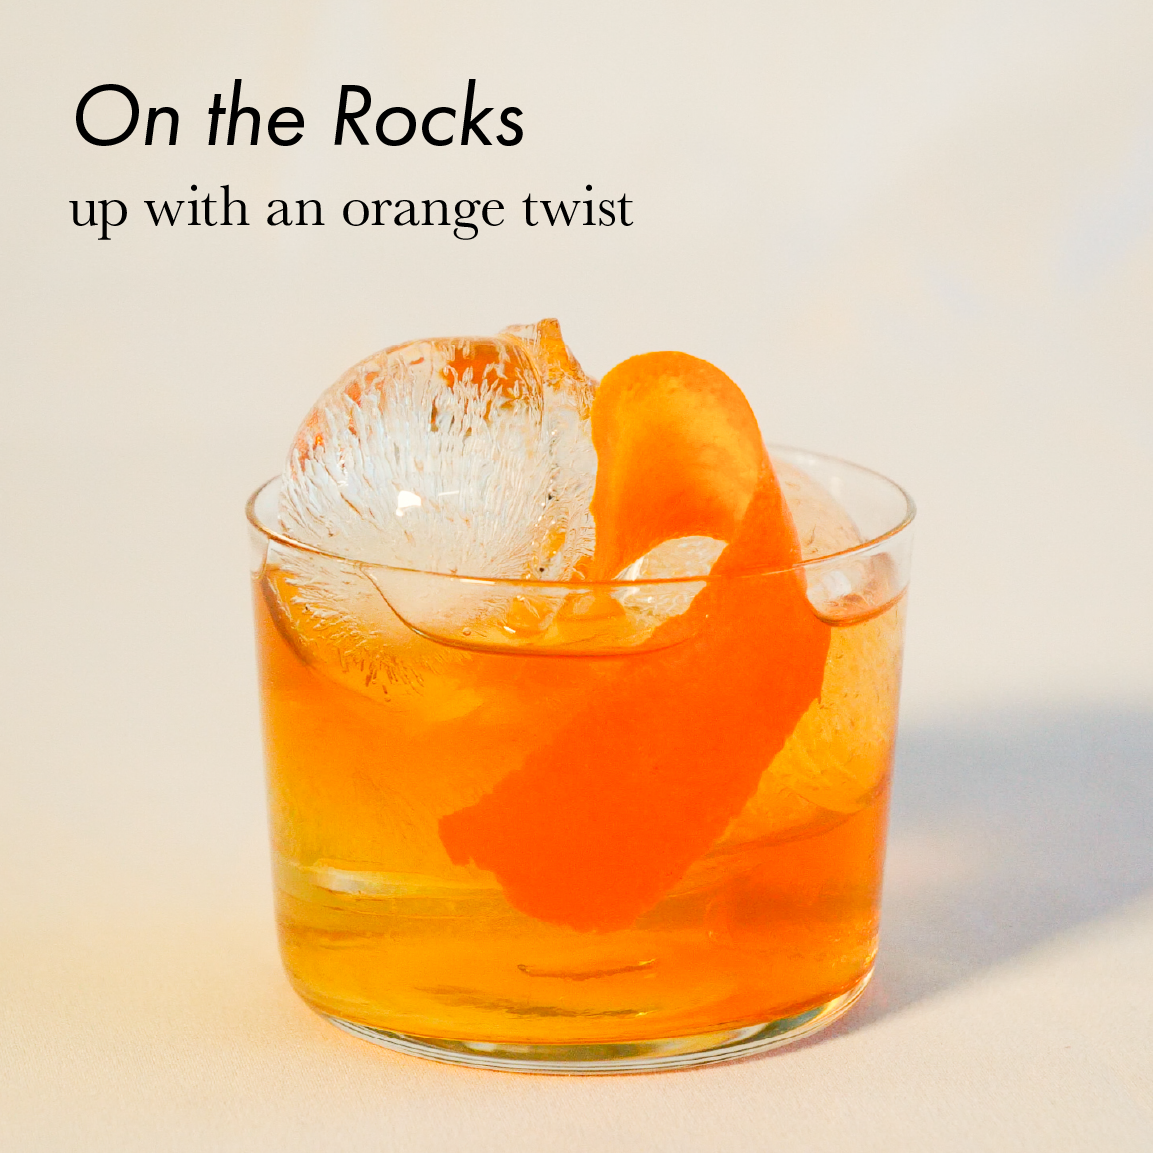 Manhattan on the rocks, up with an orange twist.